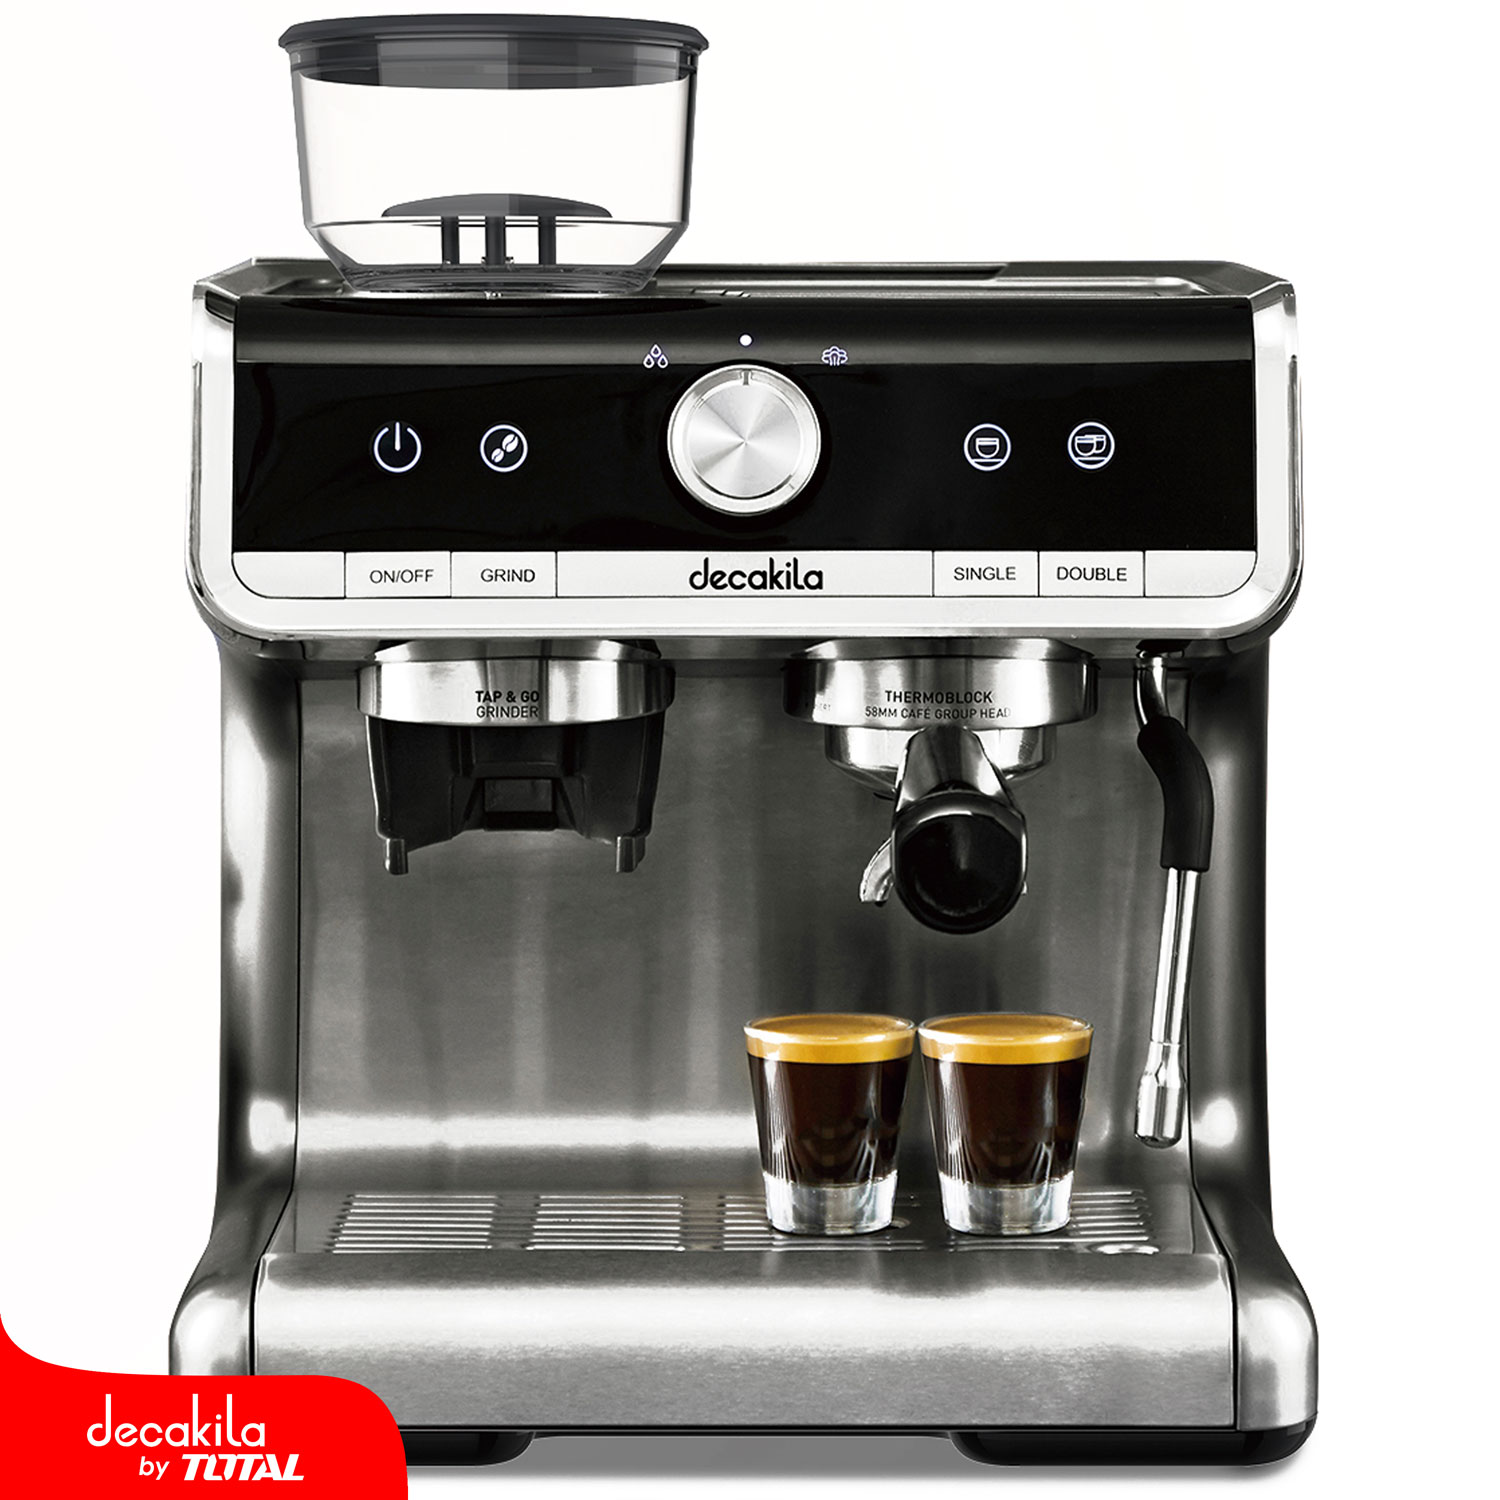 11 tipos de café que podés preparar con tu cafetera express - Bidcom News